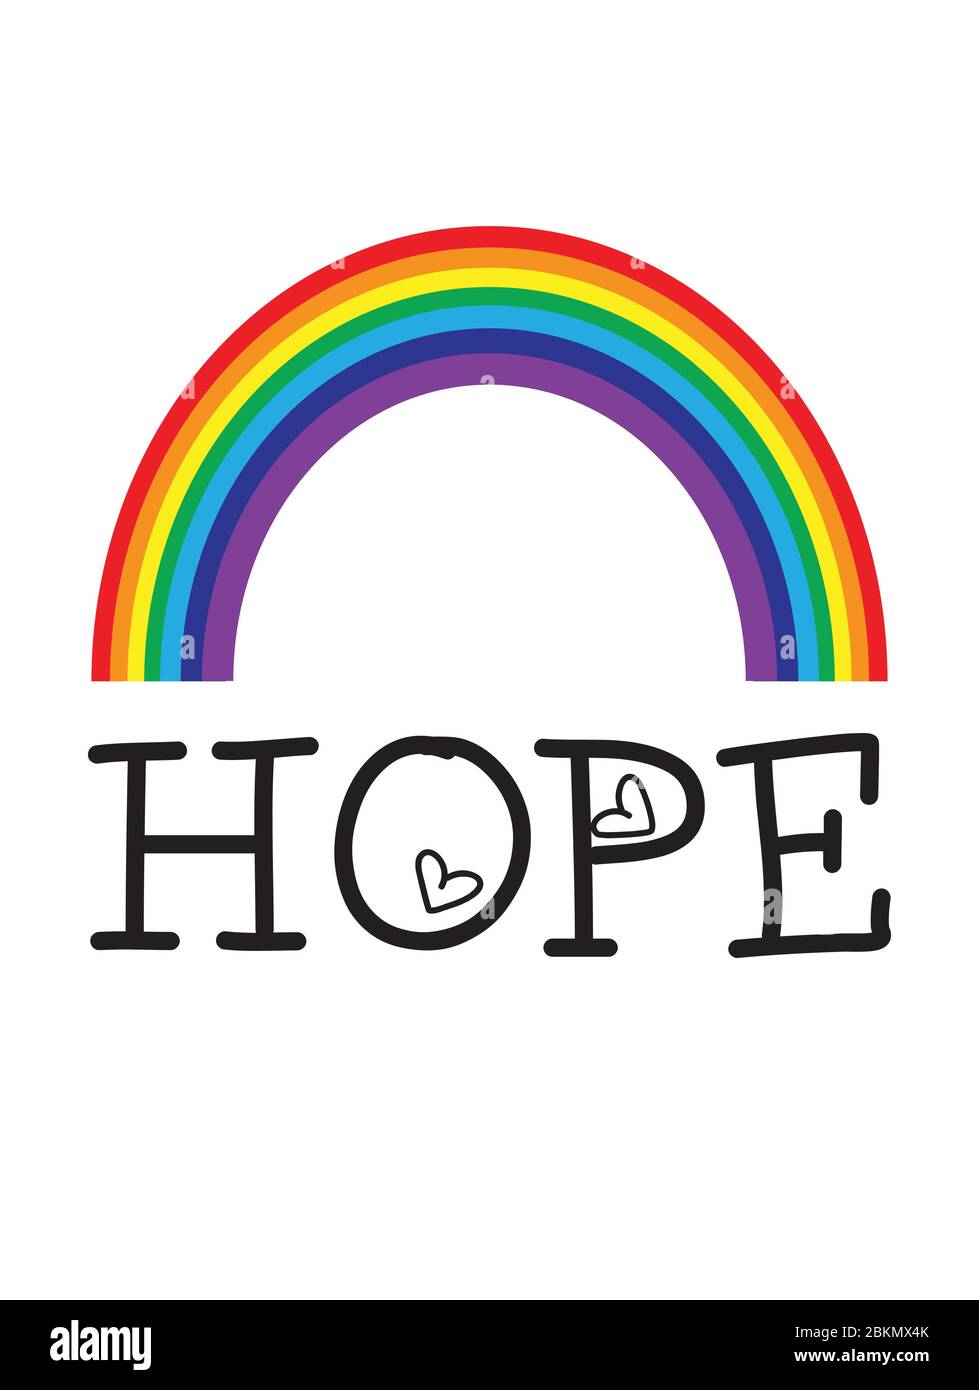 HOPE Rainbow vecteur- pandémie de coronavirus 2020 Royaume-Uni Illustration de Vecteur